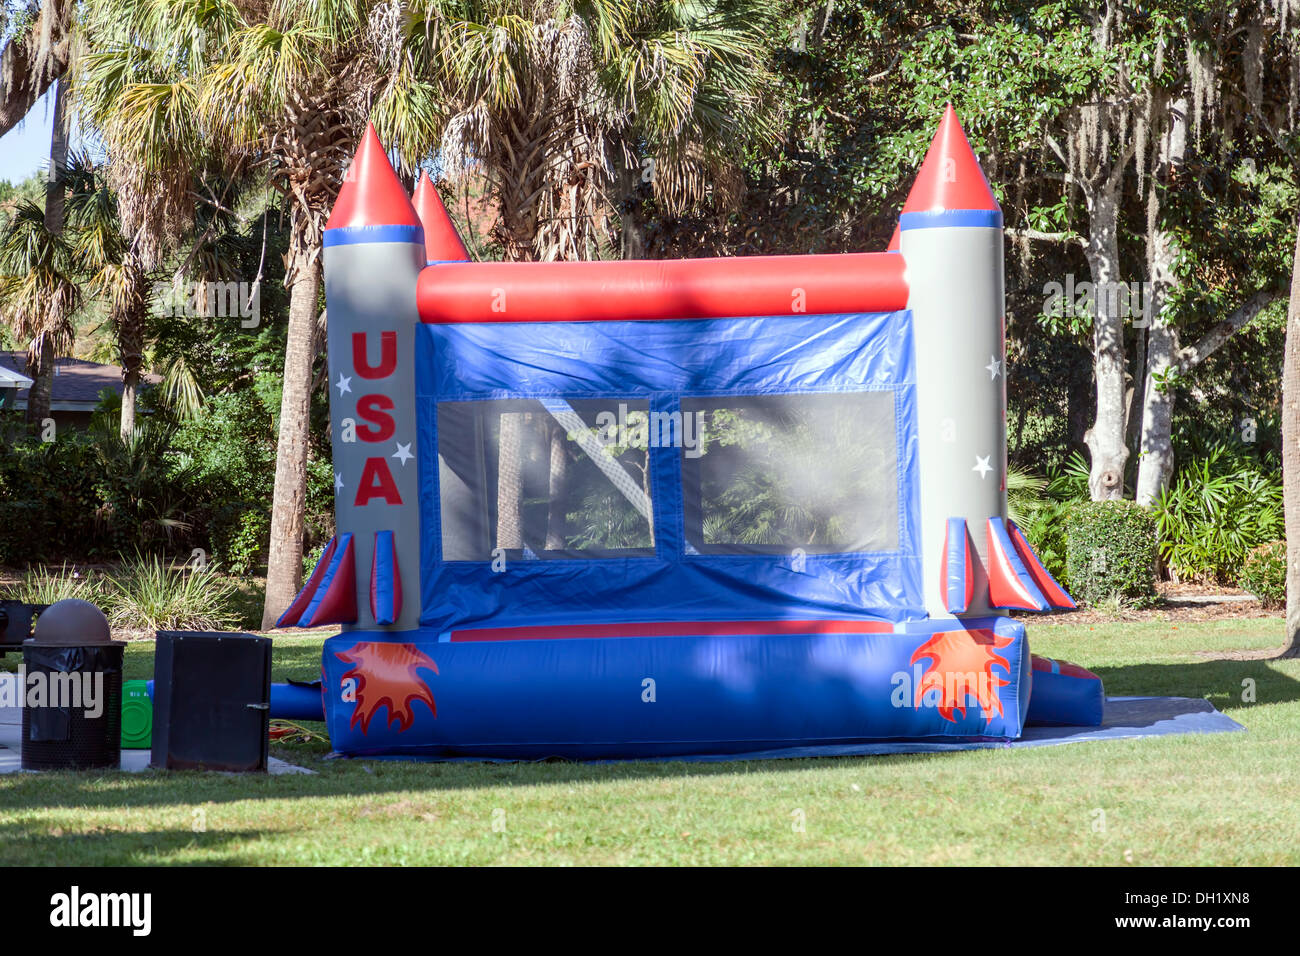 USA gonfiabile razzi casa bounce gioco ambientato in un parco pubblico in supporto Dora, Florida. Foto Stock